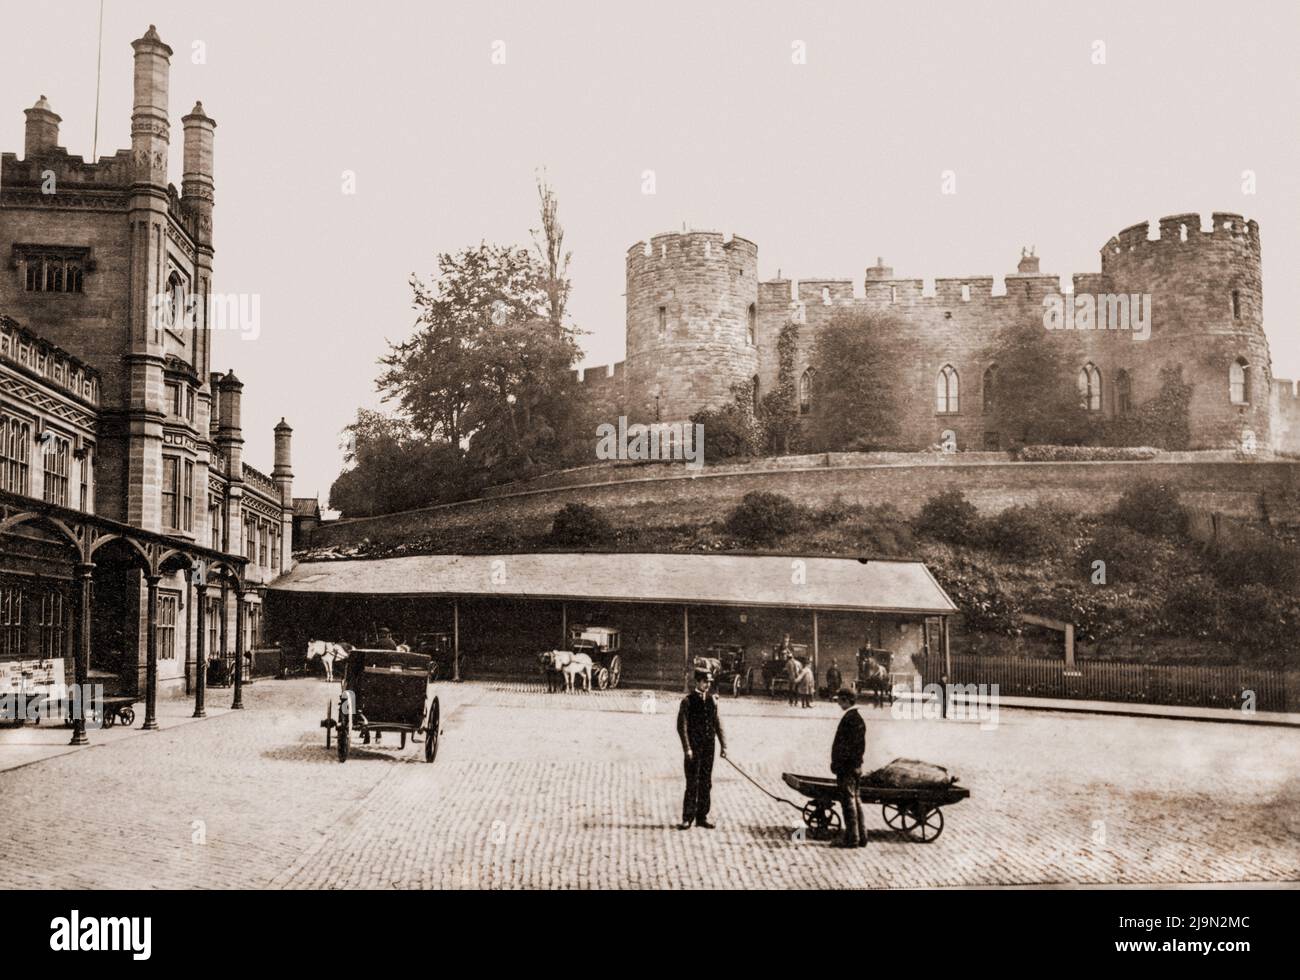 Castillo de Shrewsbury y estación de tren, Inglaterra, Reino Unido, alrededor de 1885 Foto de stock